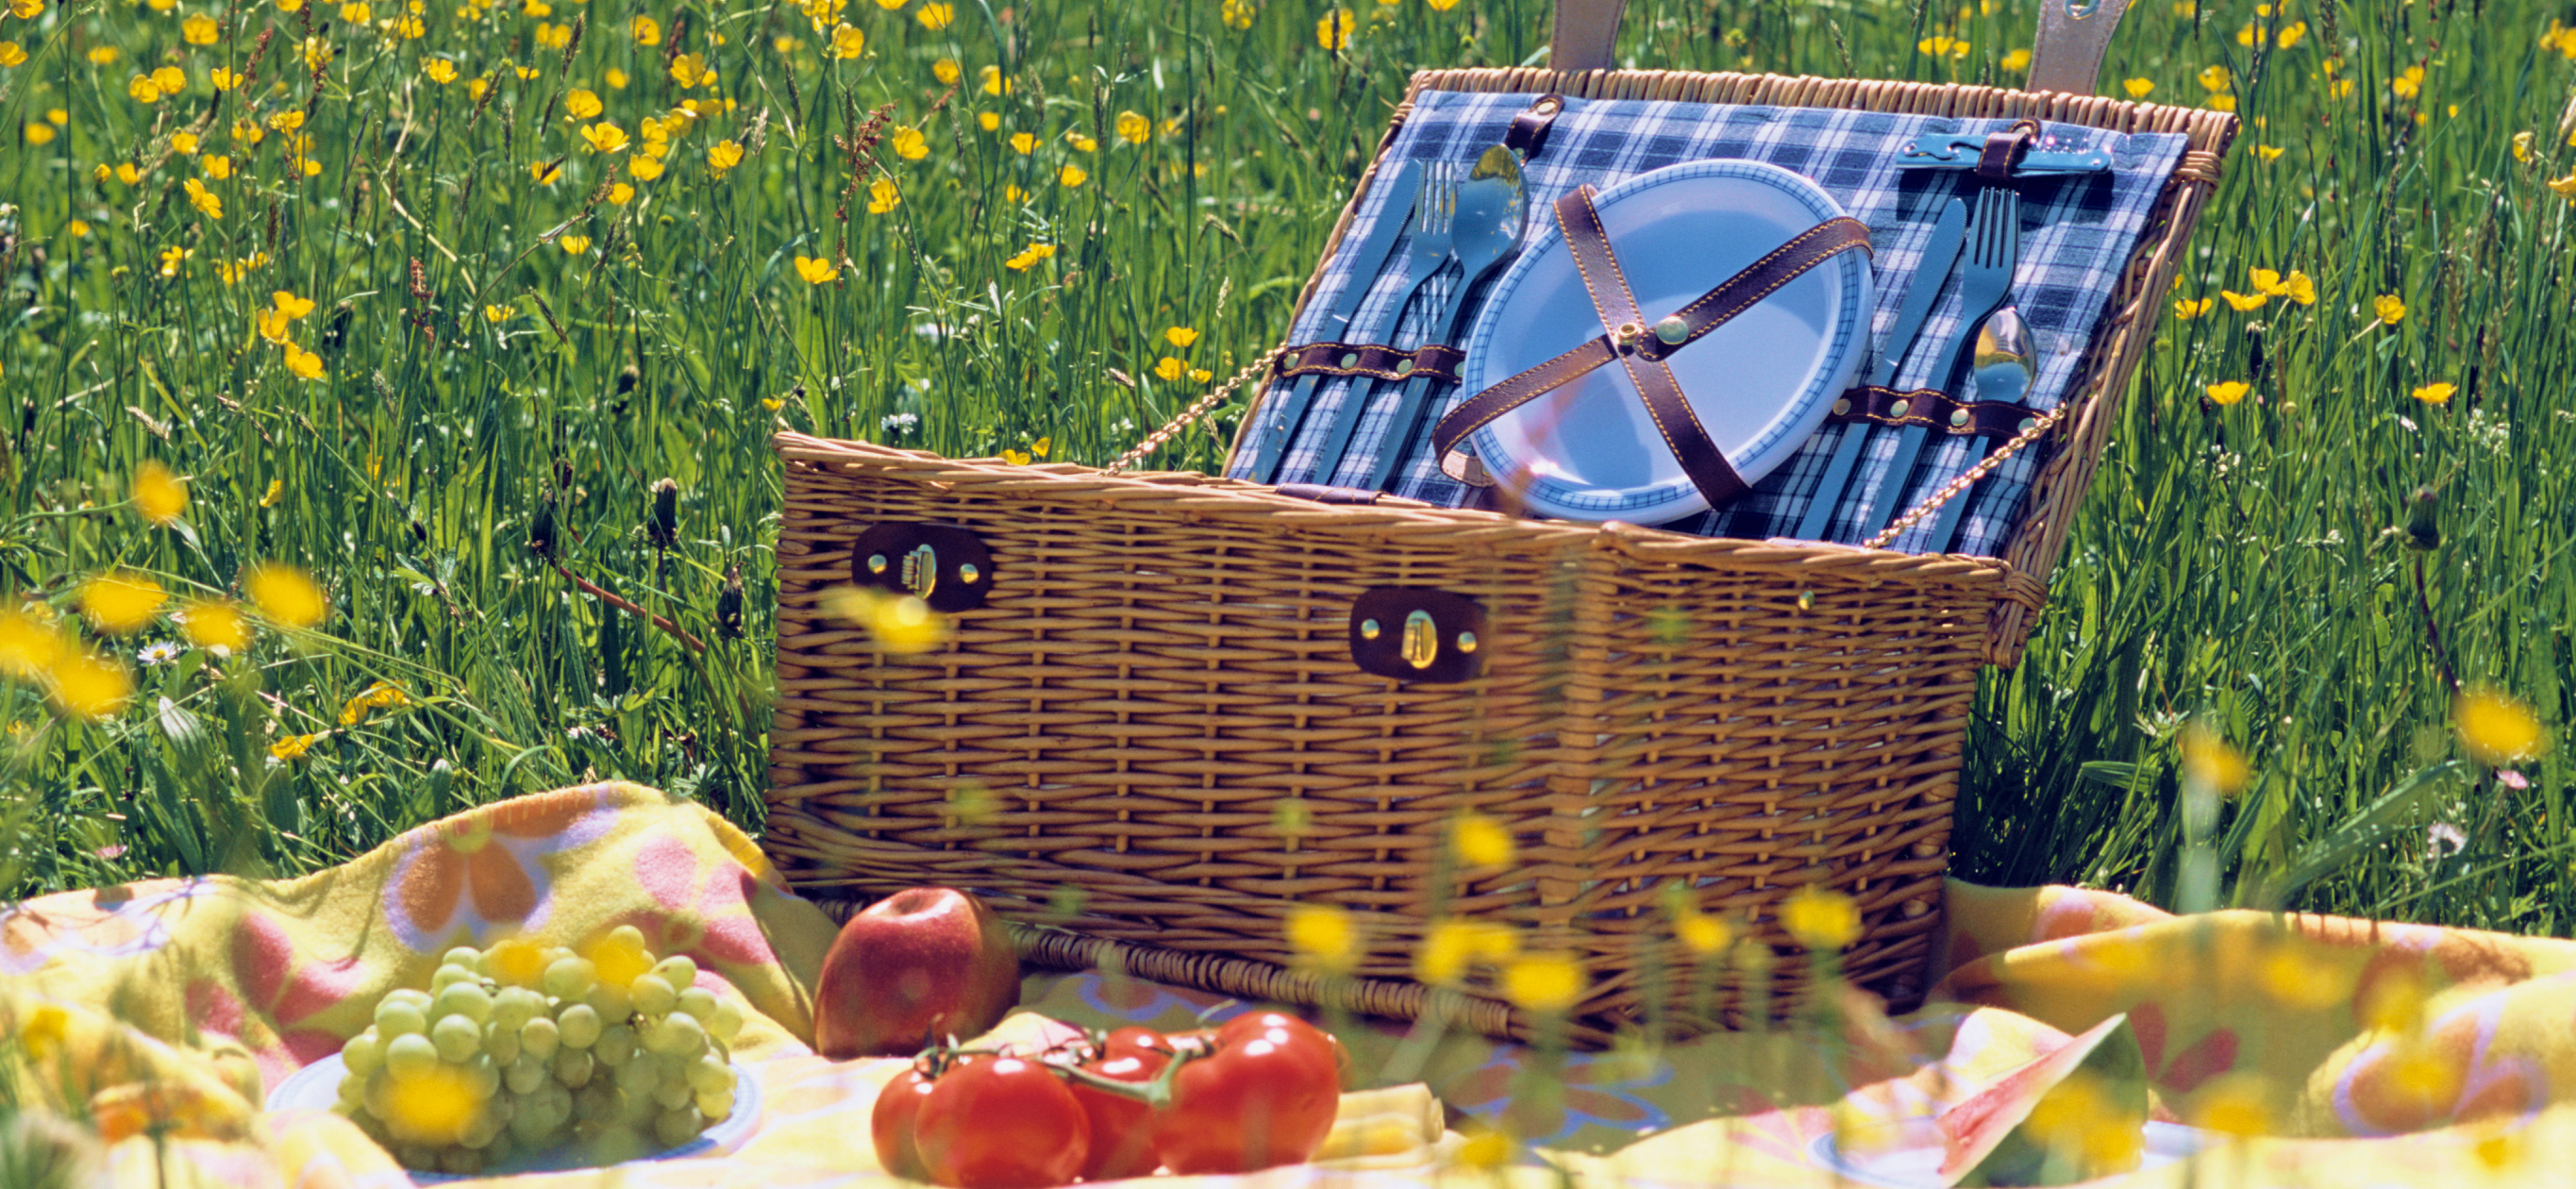 Что взять на пикник: 20 това­ров для иде­аль­ного дня на при­роде